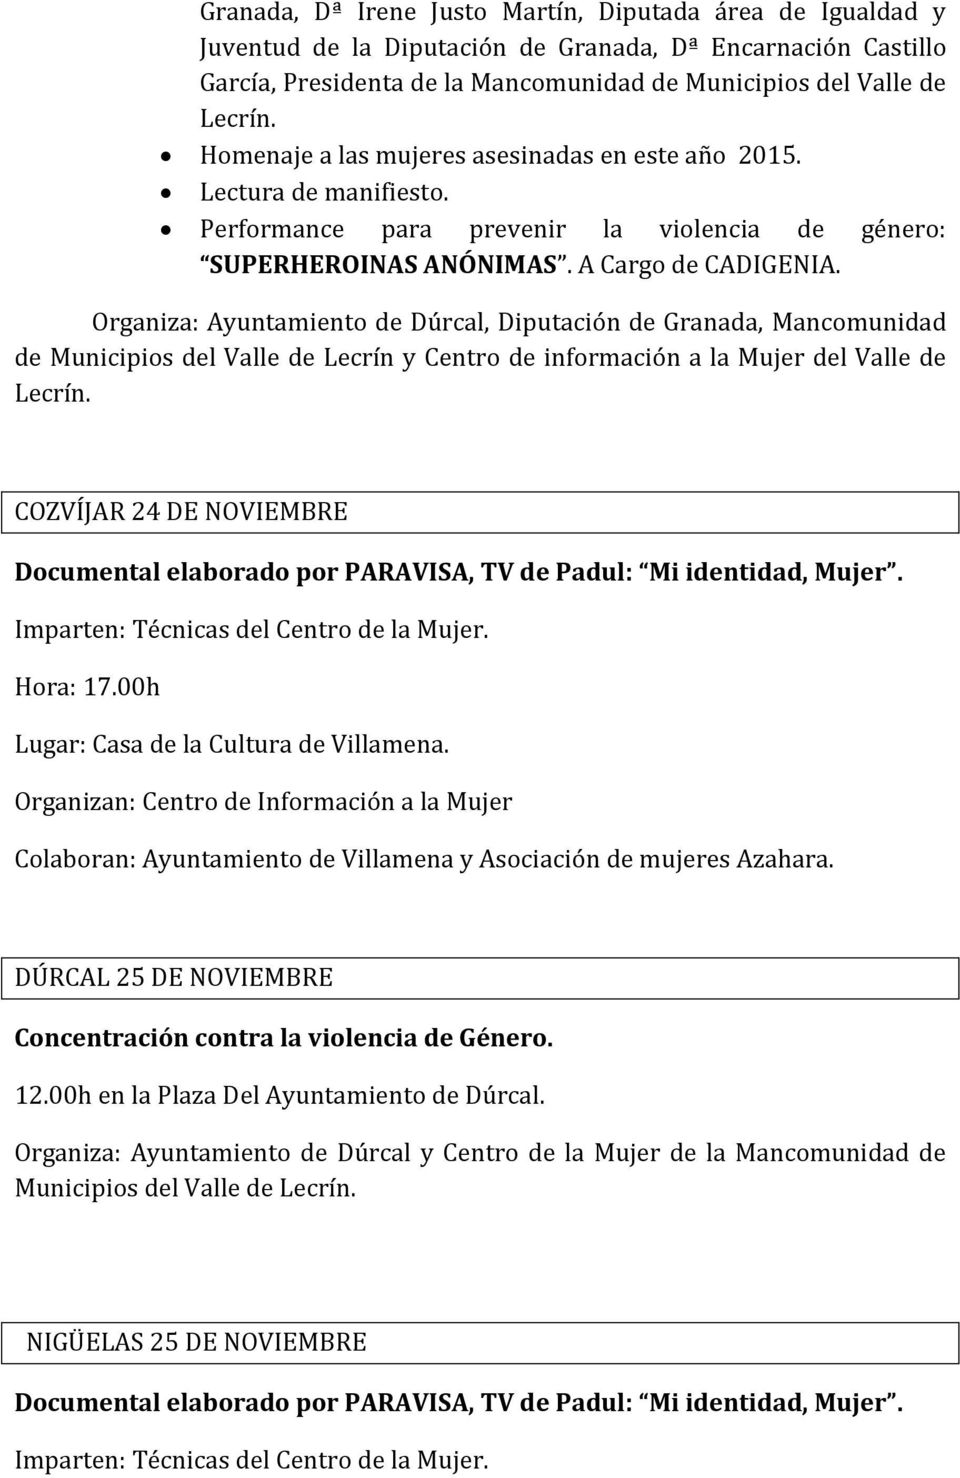 Organiza: Ayuntamiento de Dúrcal, Diputación de Granada, Mancomunidad de Municipios del Valle de Lecrín y Centro de información a la Mujer del Valle de Lecrín.